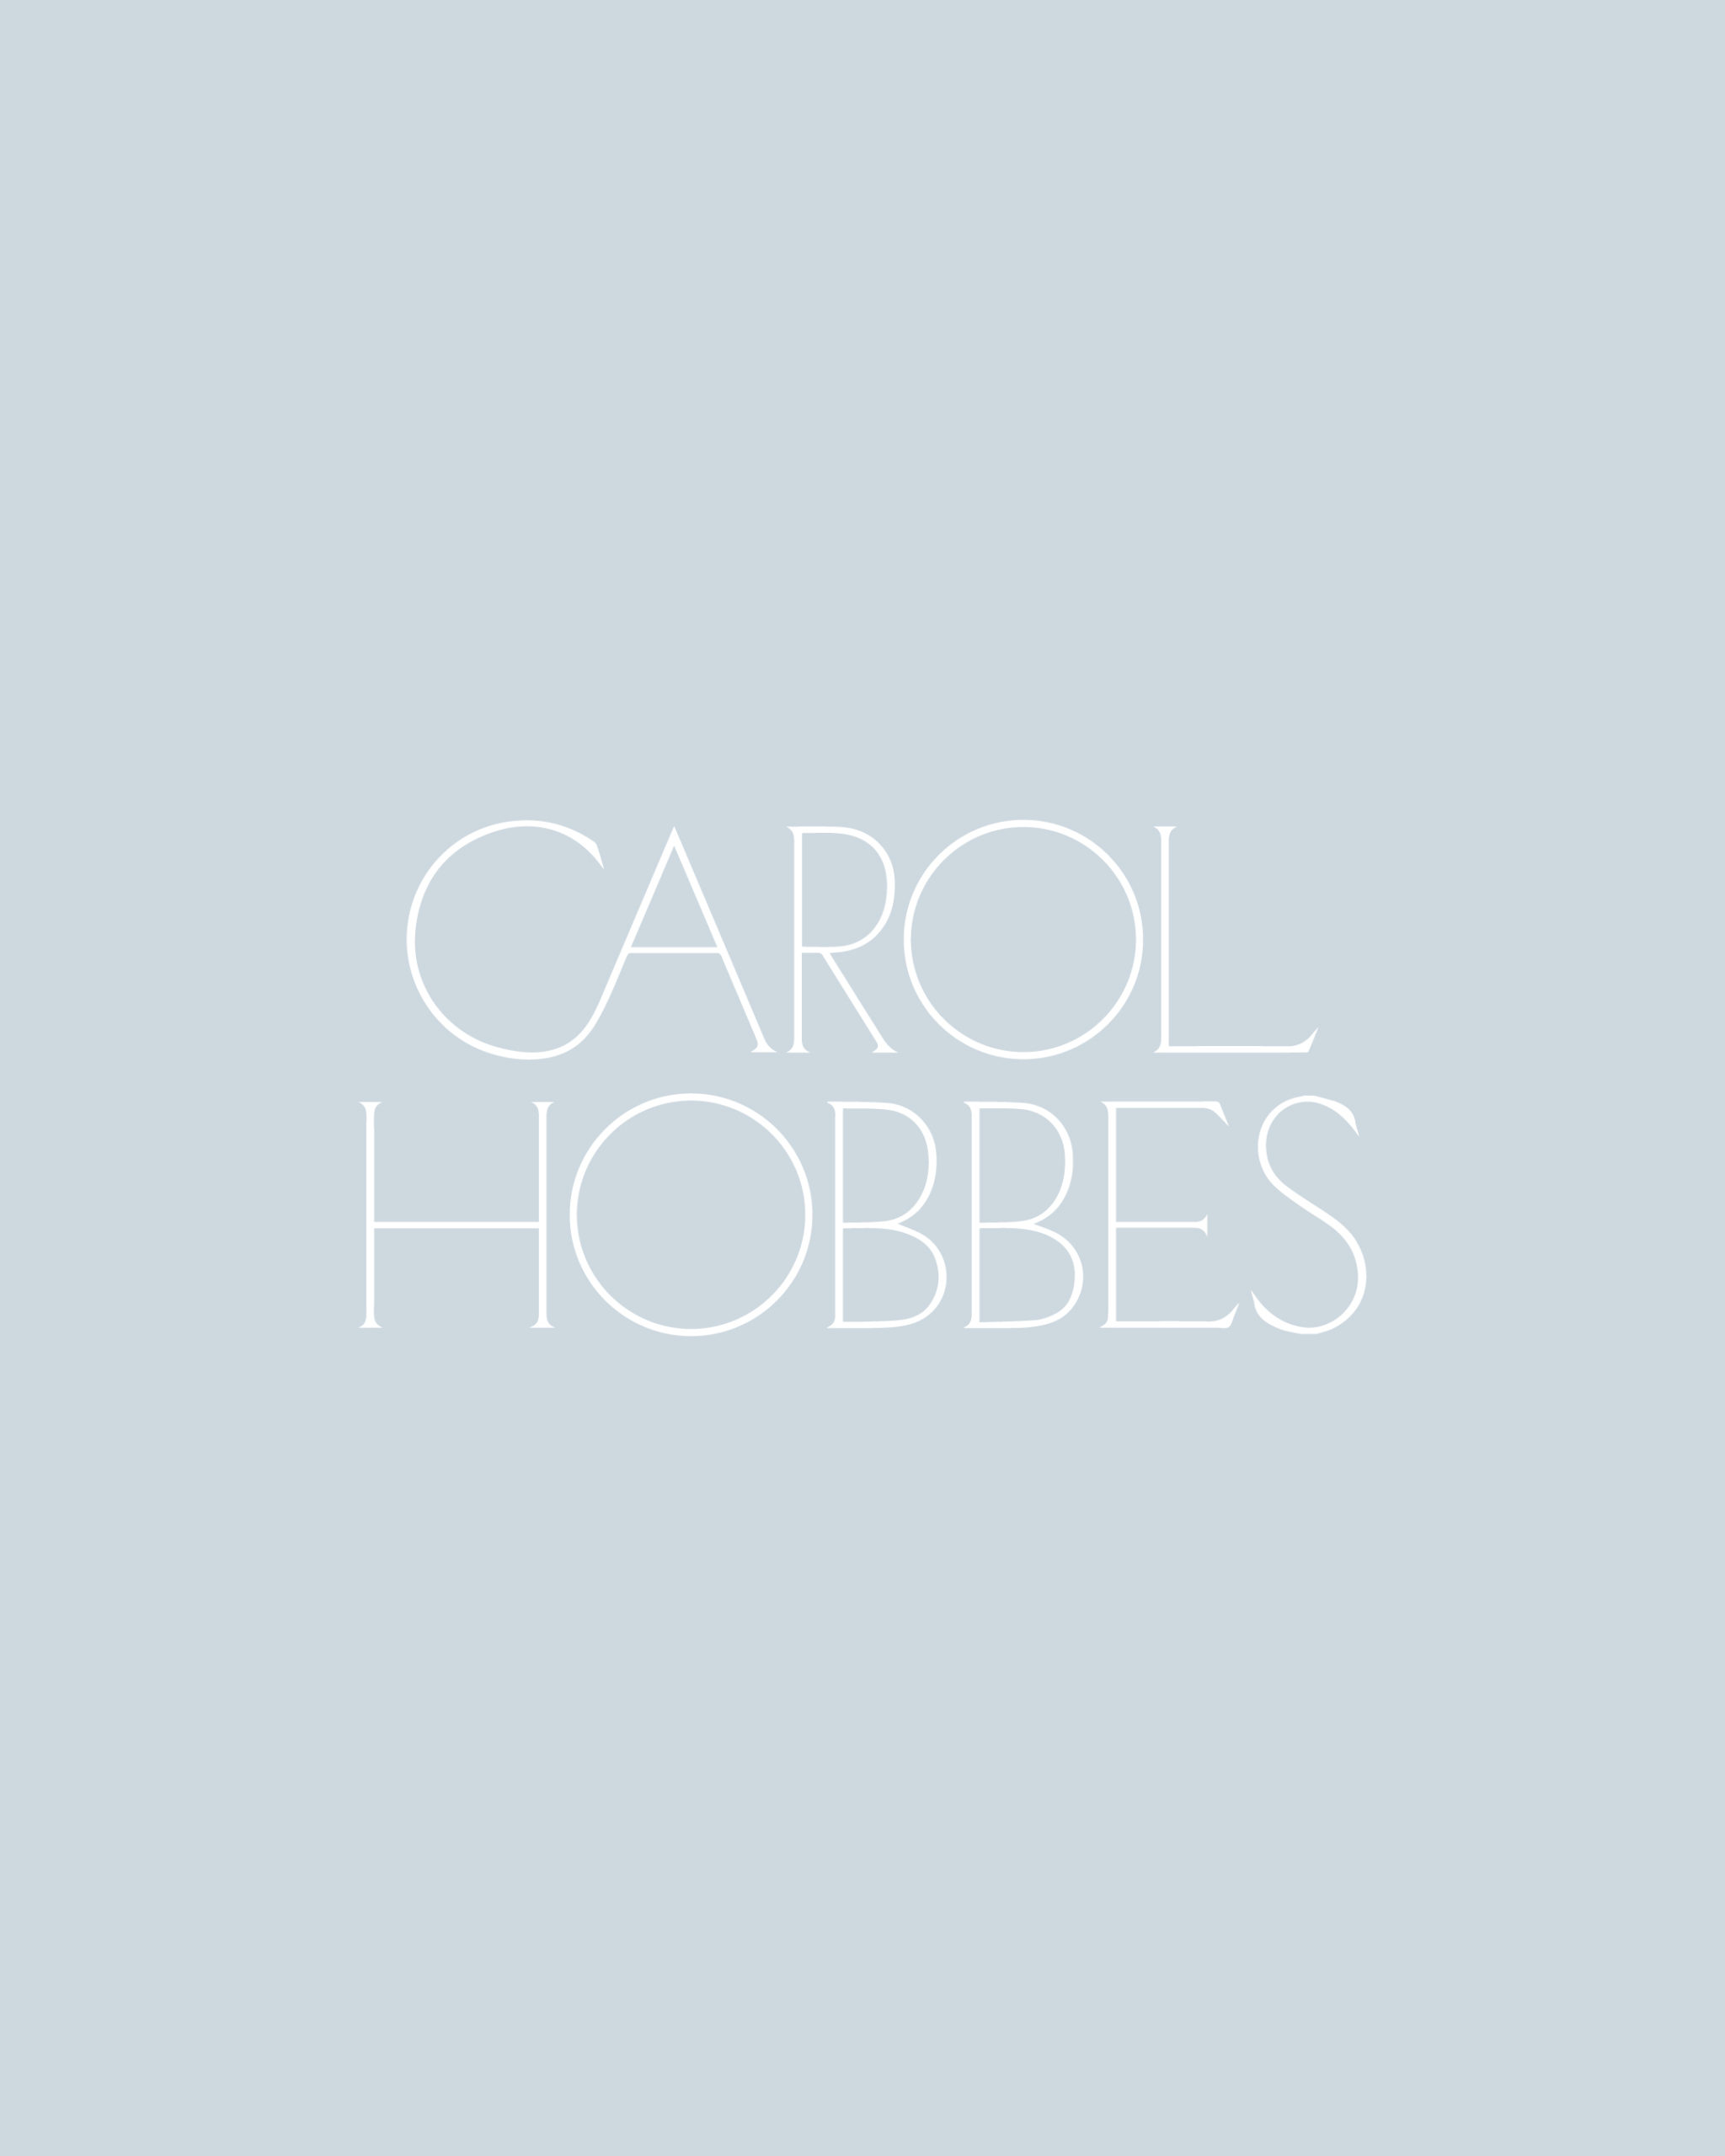 Carol Hobbes // Branding & Design for Therapist by Hearten + Hone